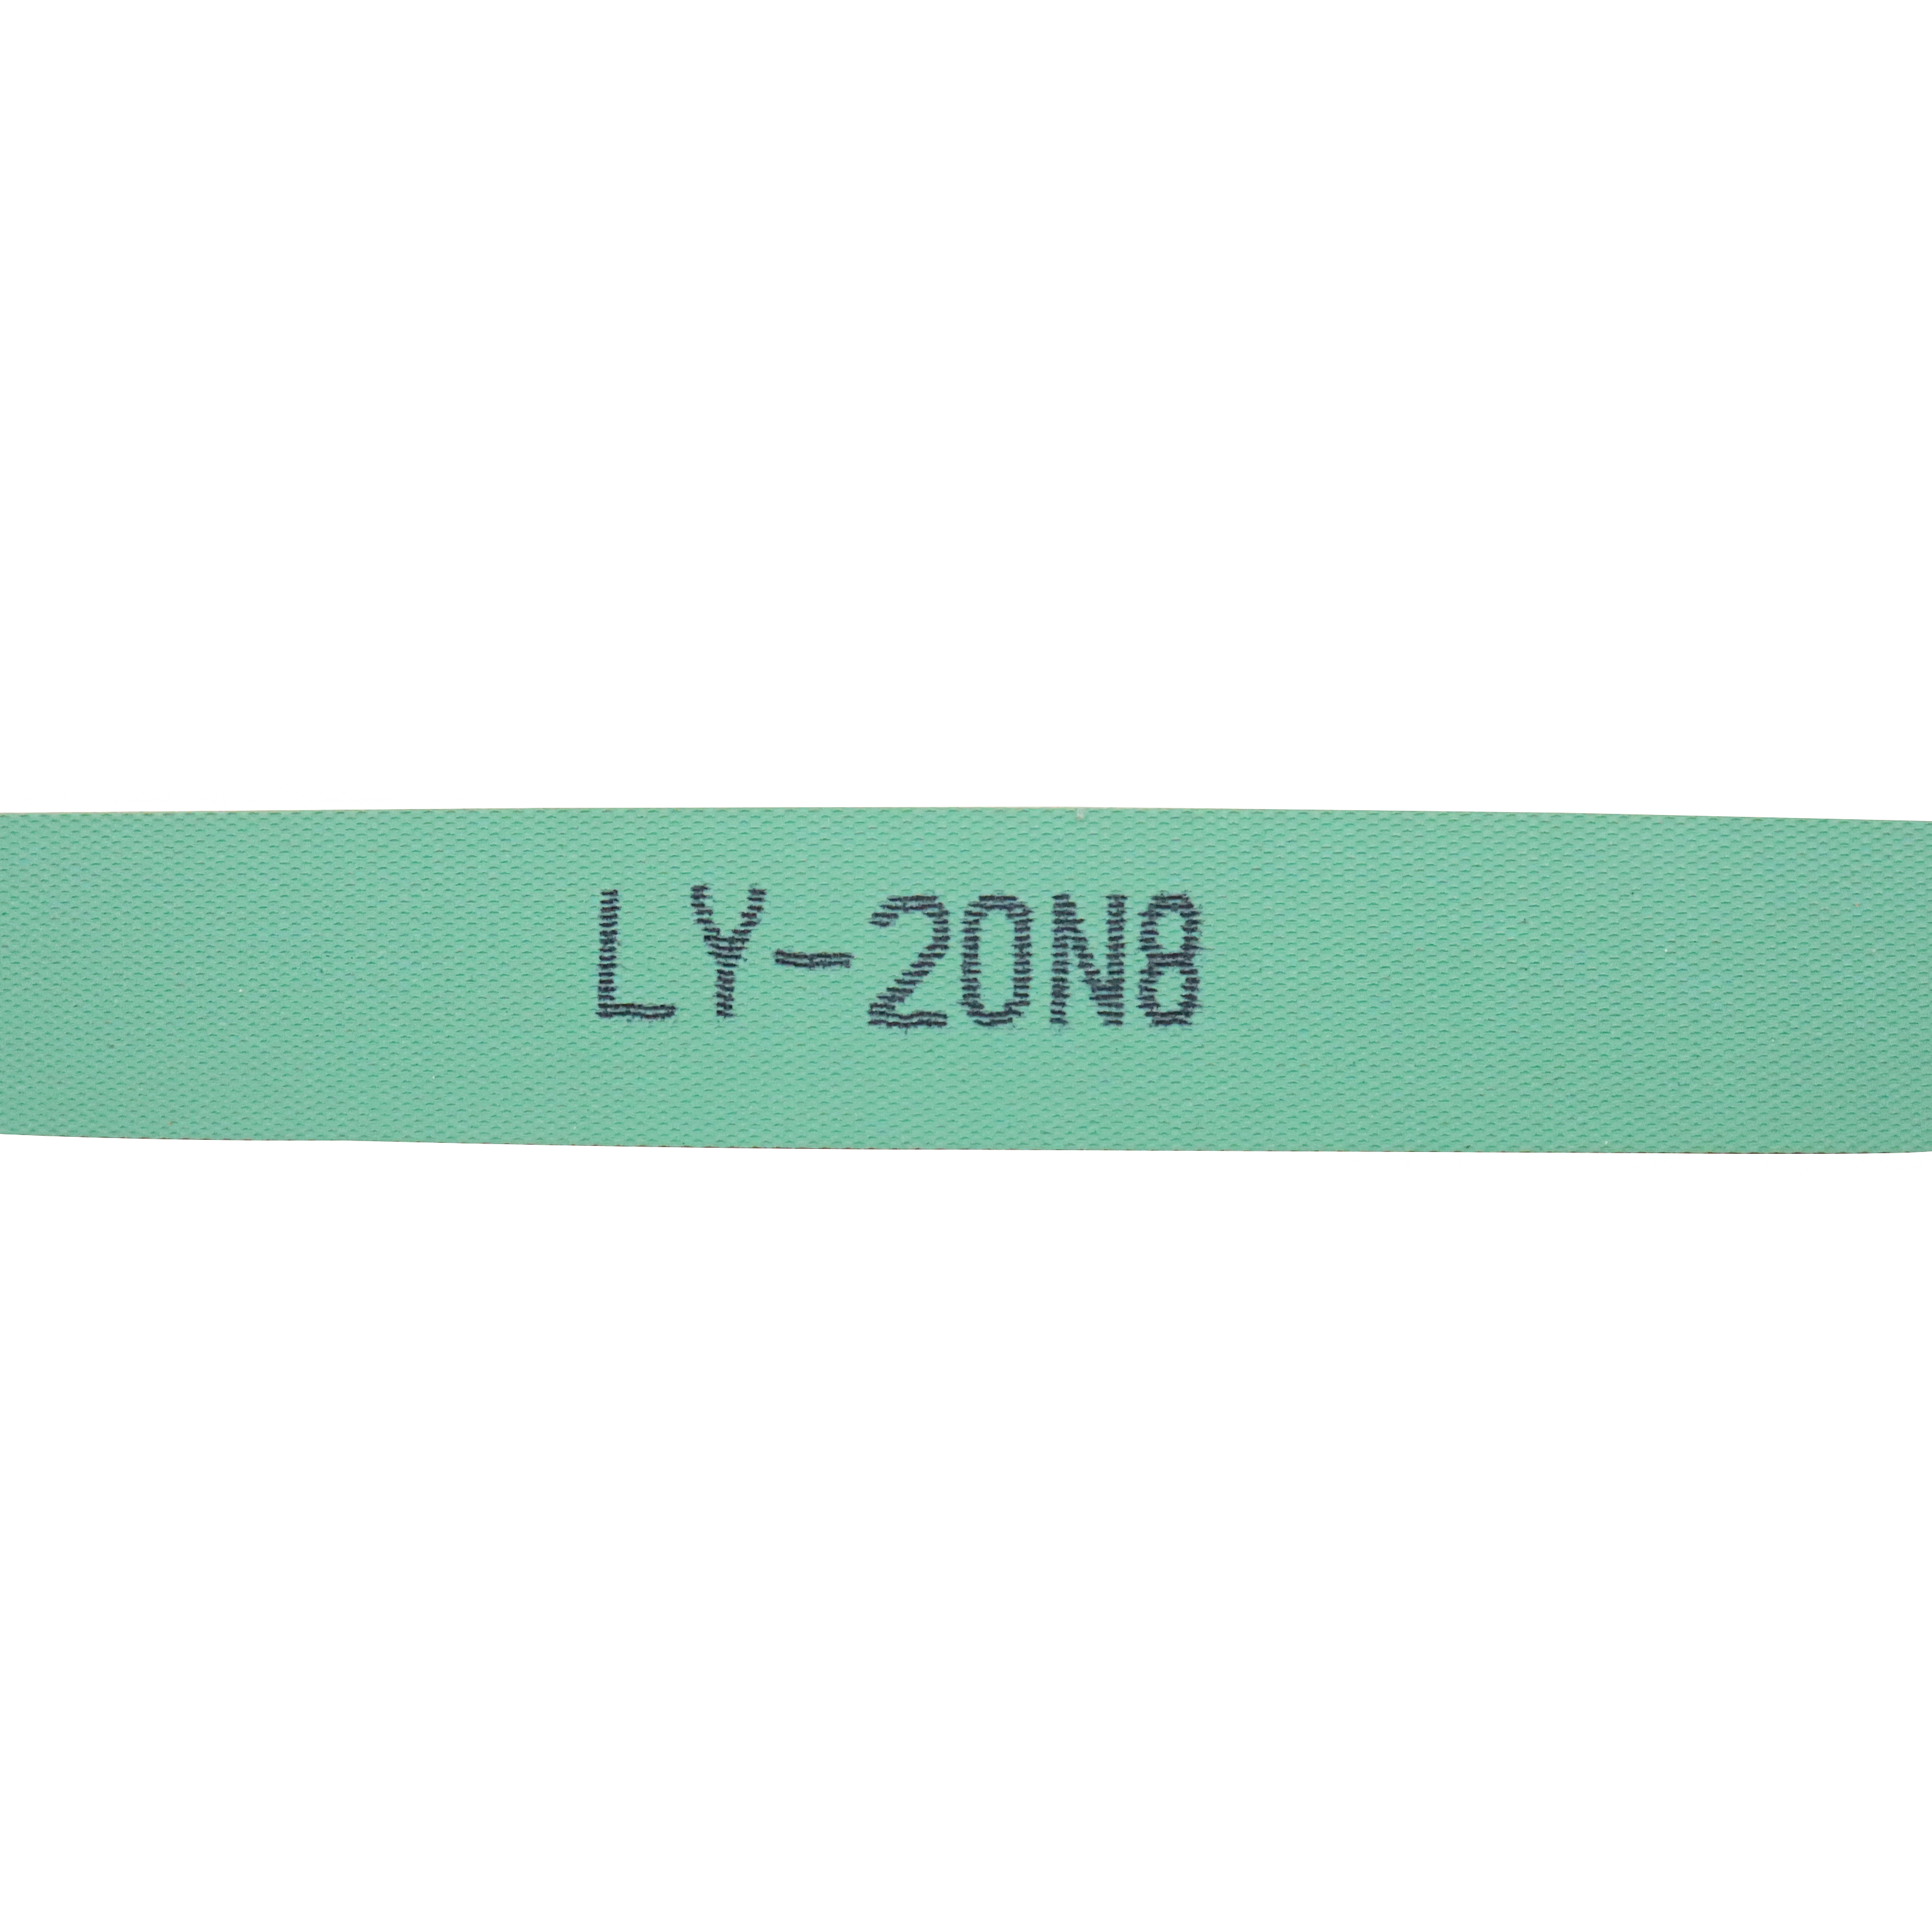 LY-20N8